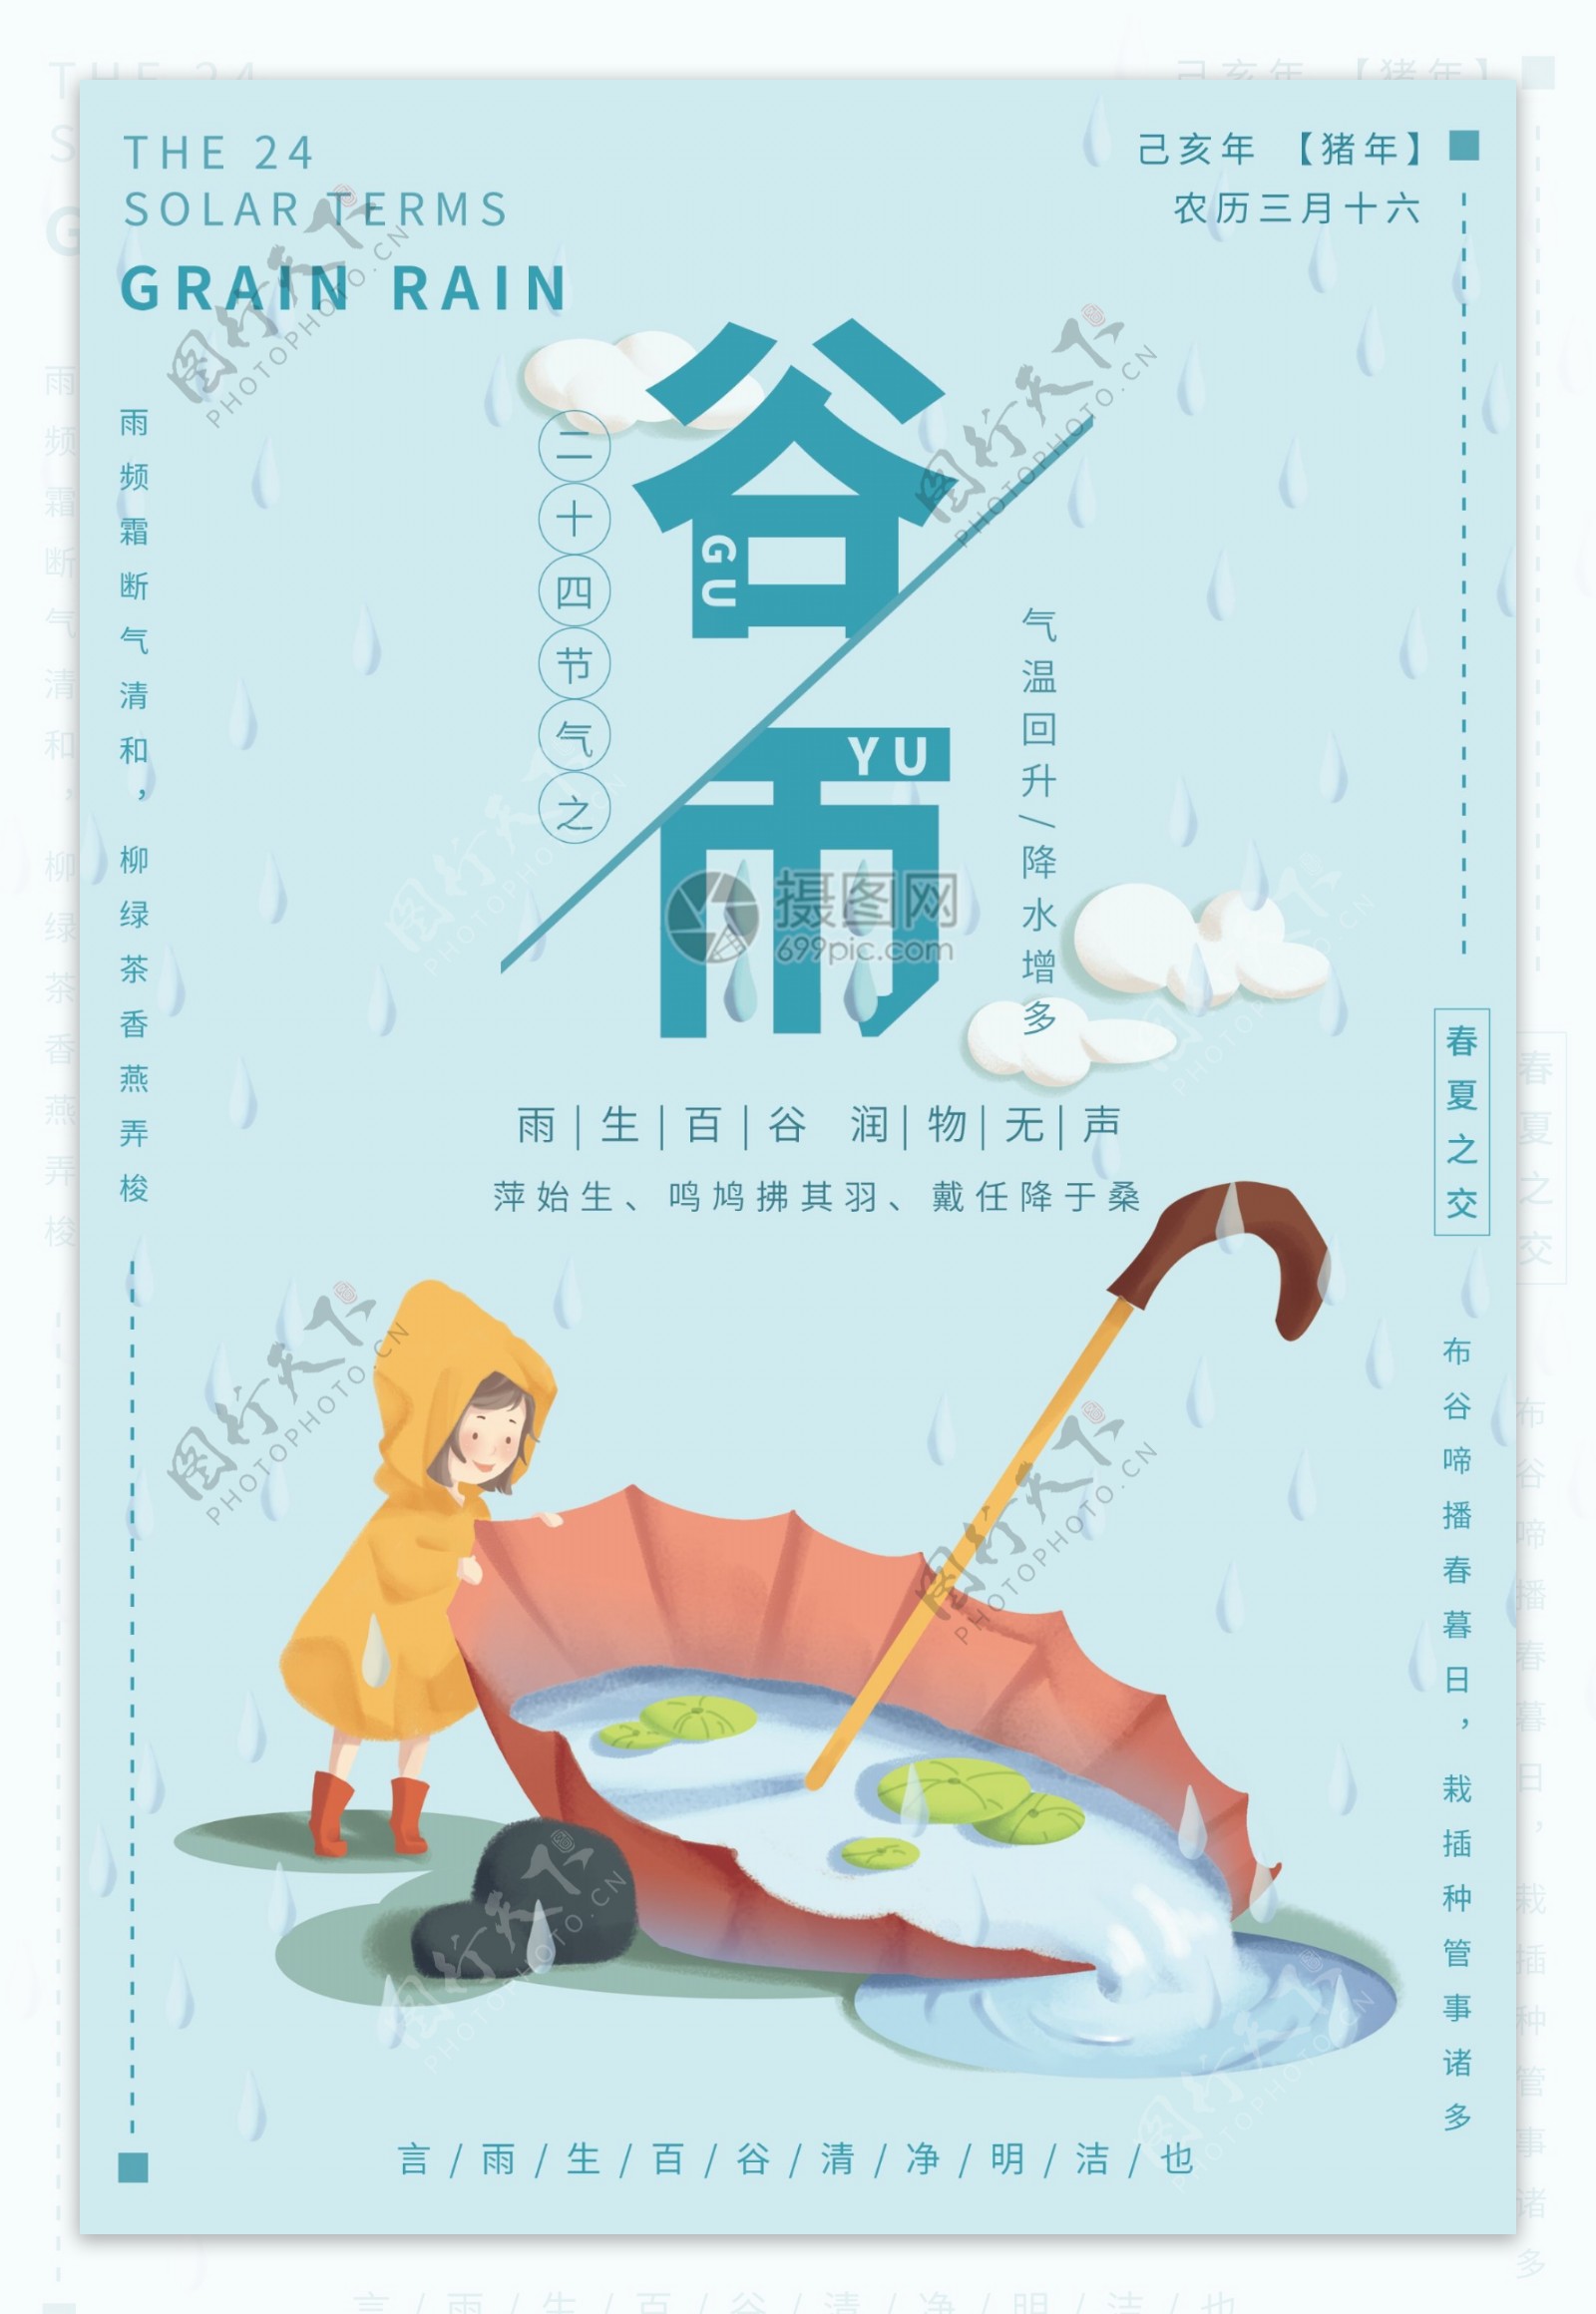 传统节气谷雨节气海报